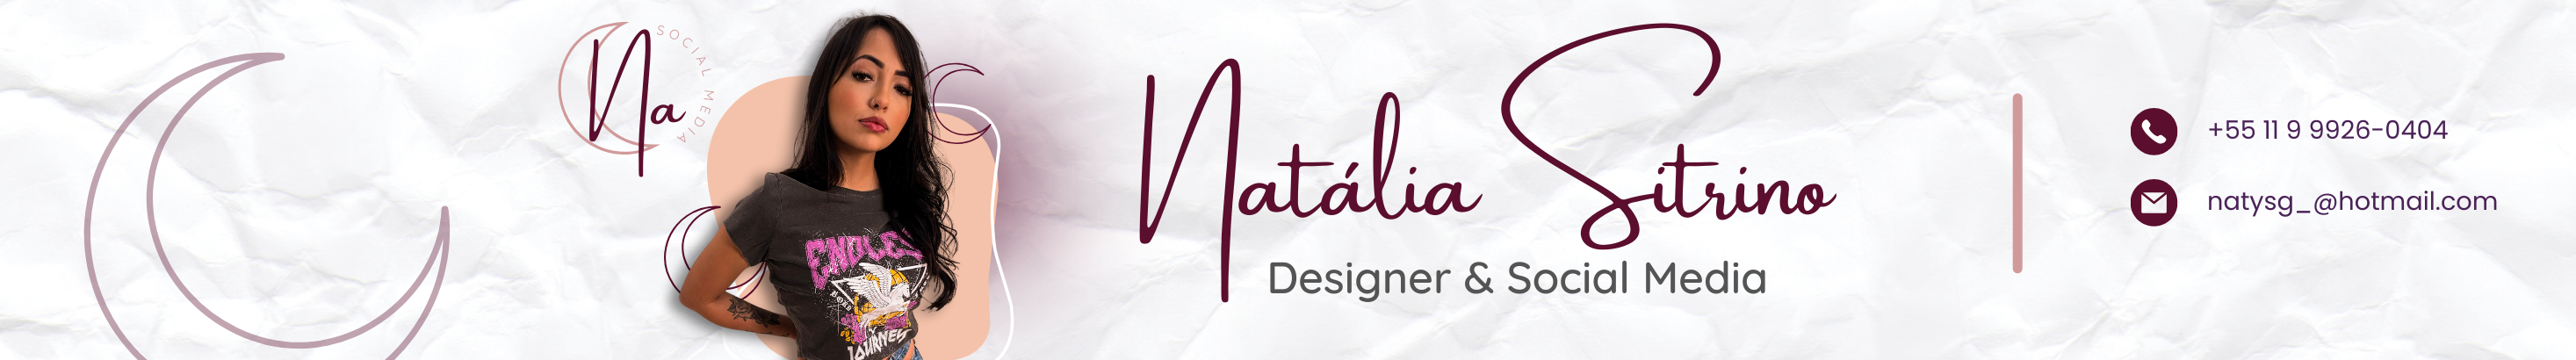 Natalia Sitrino's profile banner